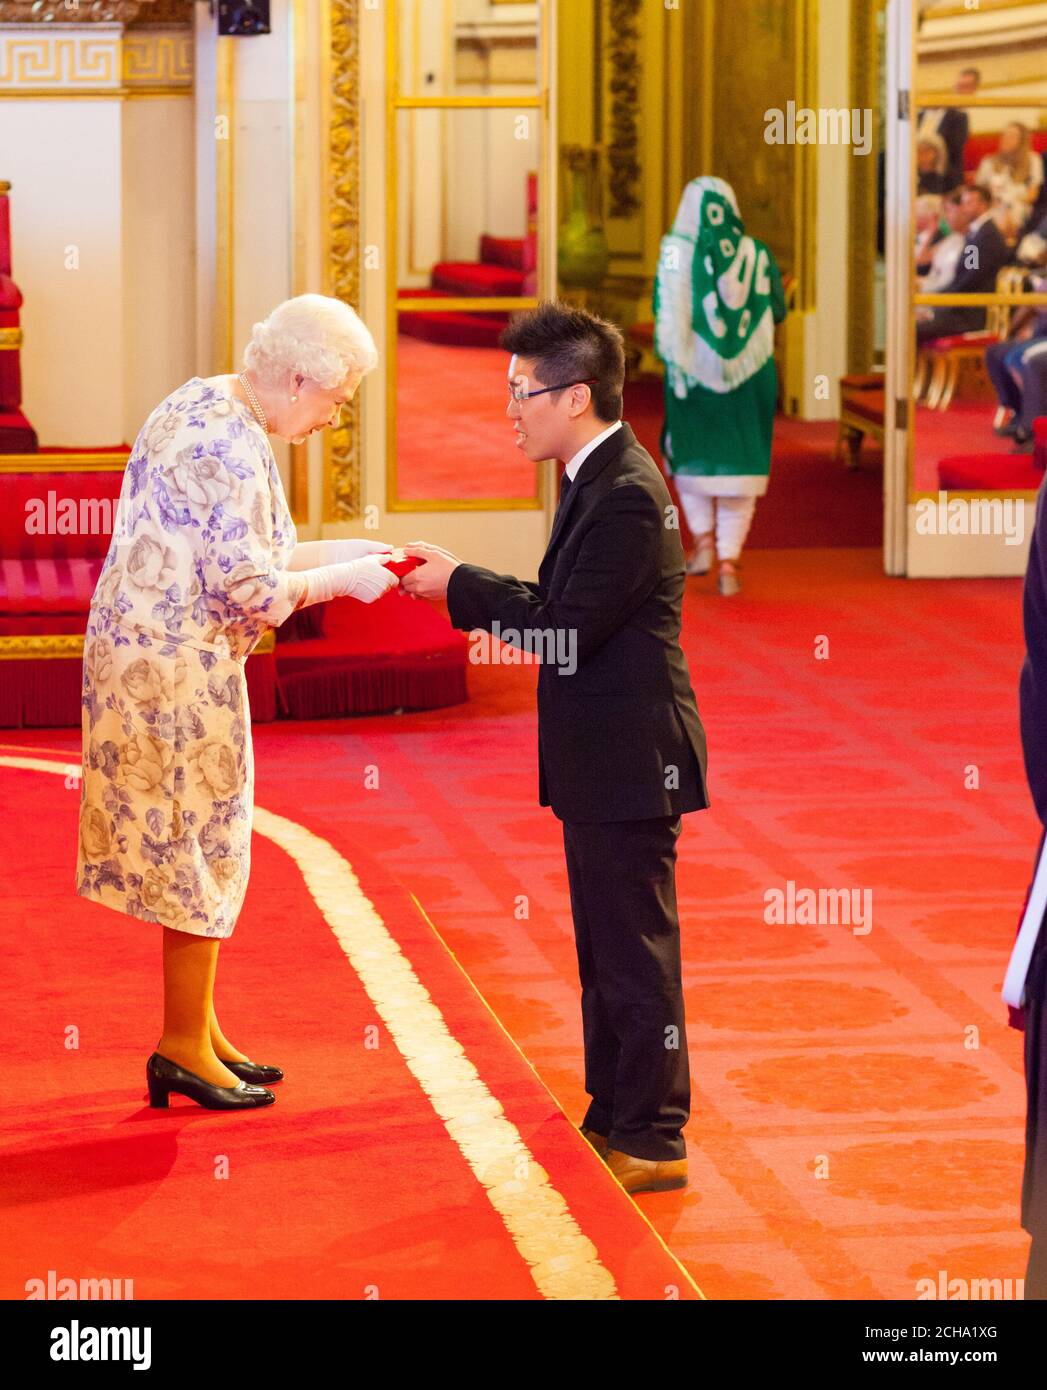 Mark Jin Quan Cheng aus Singapur erhält eine Medaille von Queen Elizabeth II während der Queen's Young Leaders Awards 2016 im Buckingham Palace, London. DRÜCKEN Sie VERBANDSFOTO. Bilddatum: Donnerstag, 23. Juni 2016. Bildnachweis sollte lauten: Dominic Lipinski/PA Wire Stockfoto